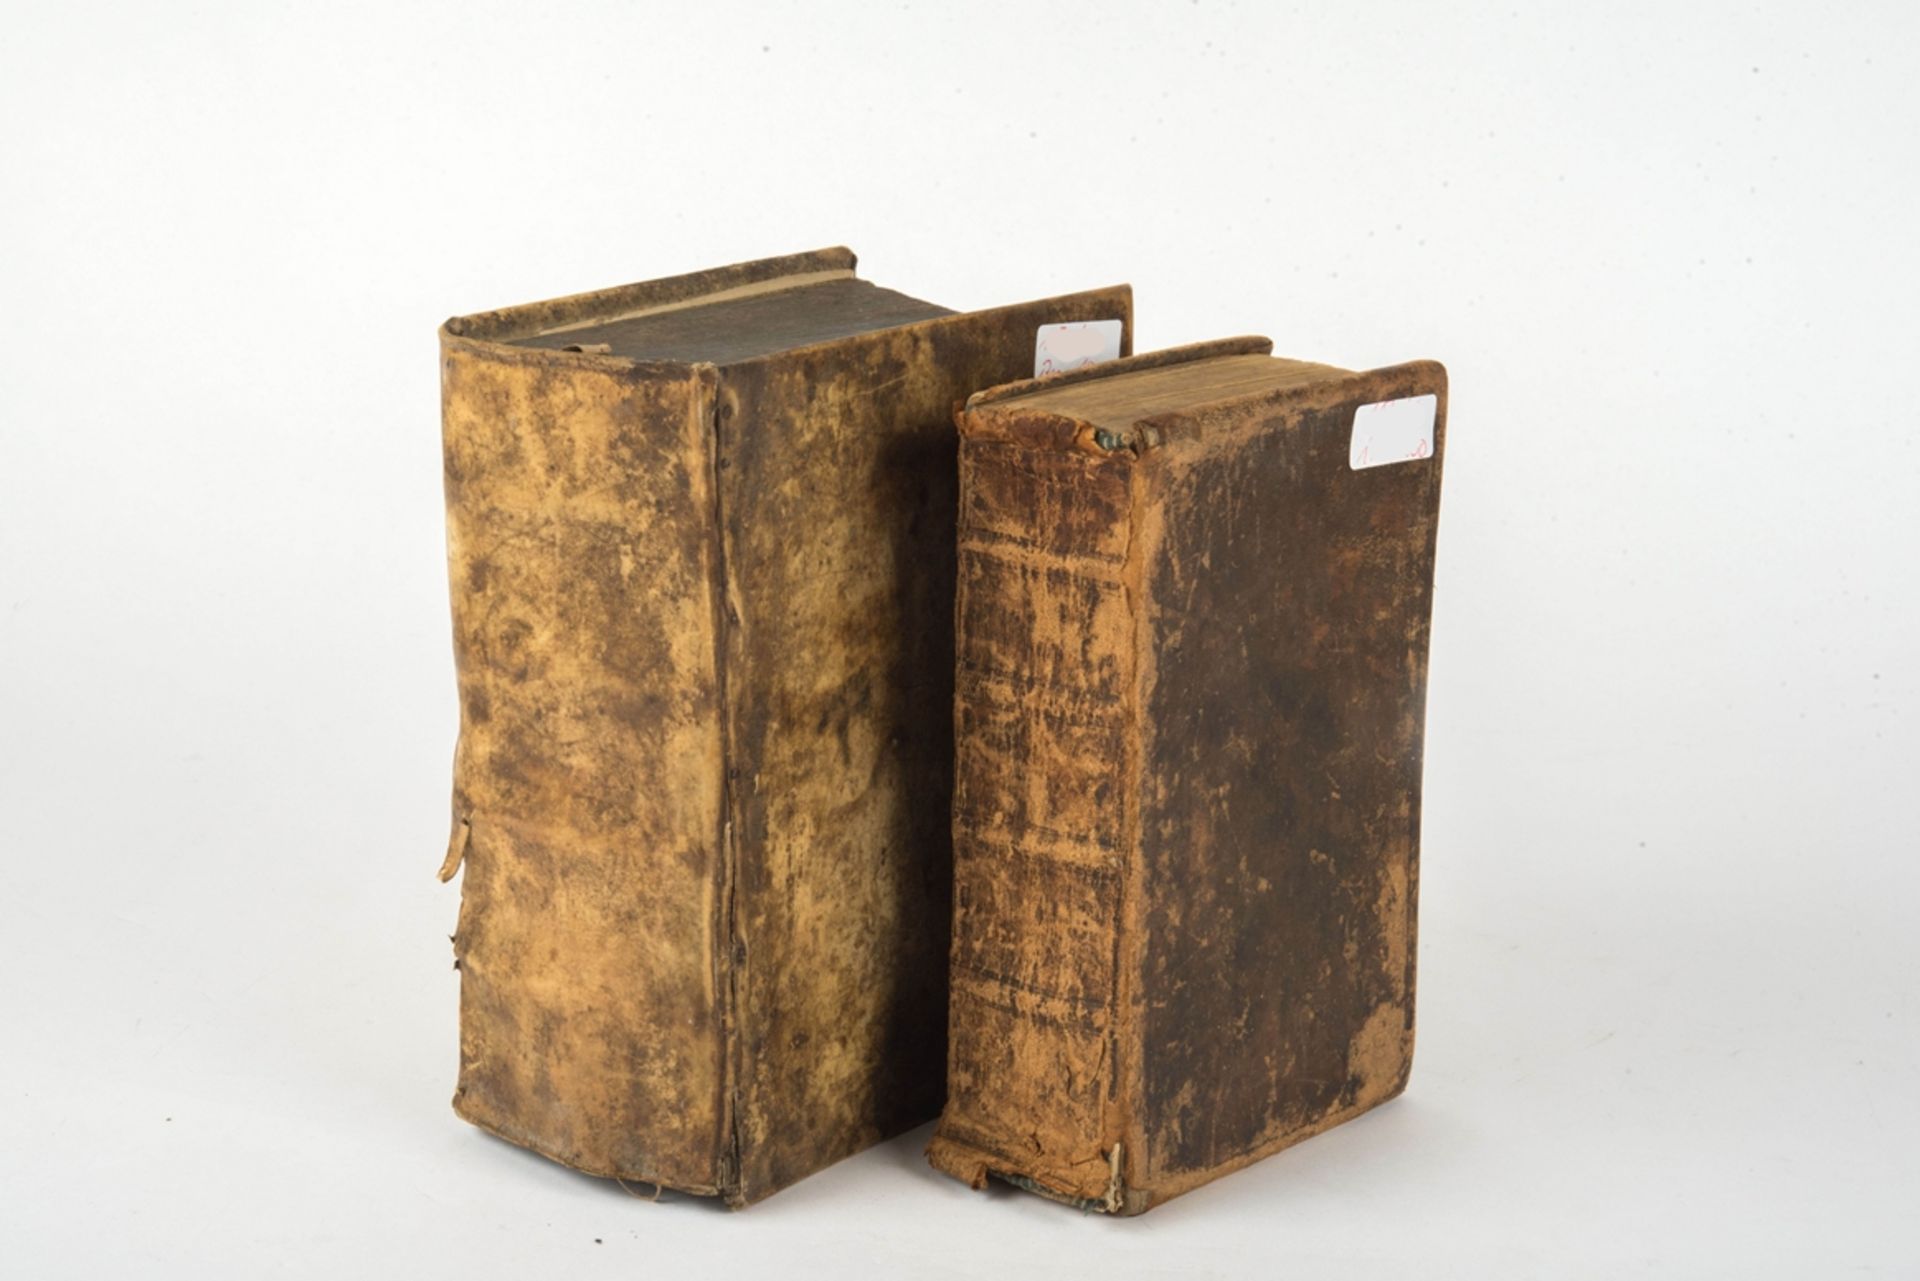 1 Bibel , mit Widmung dat. 1850 und eine evangelische Hauß-Postill. von 1743